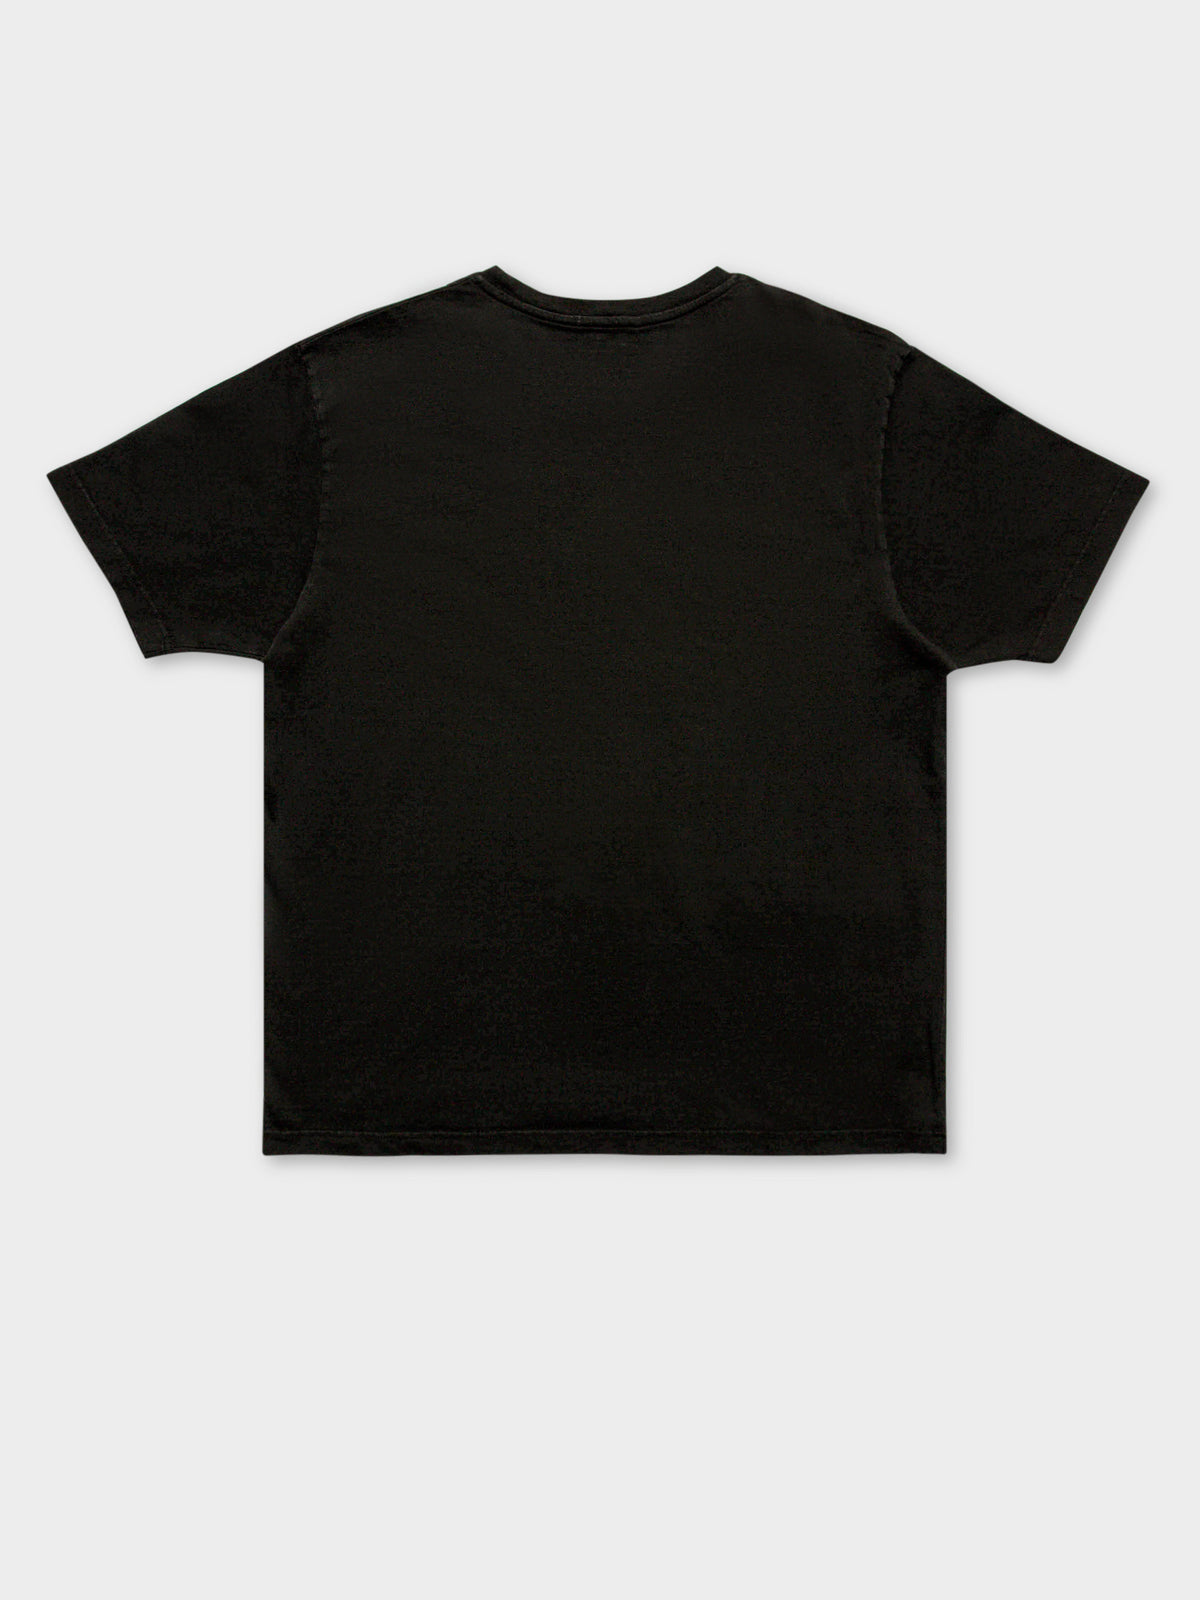 Uno Cactus T-Shirt in Black